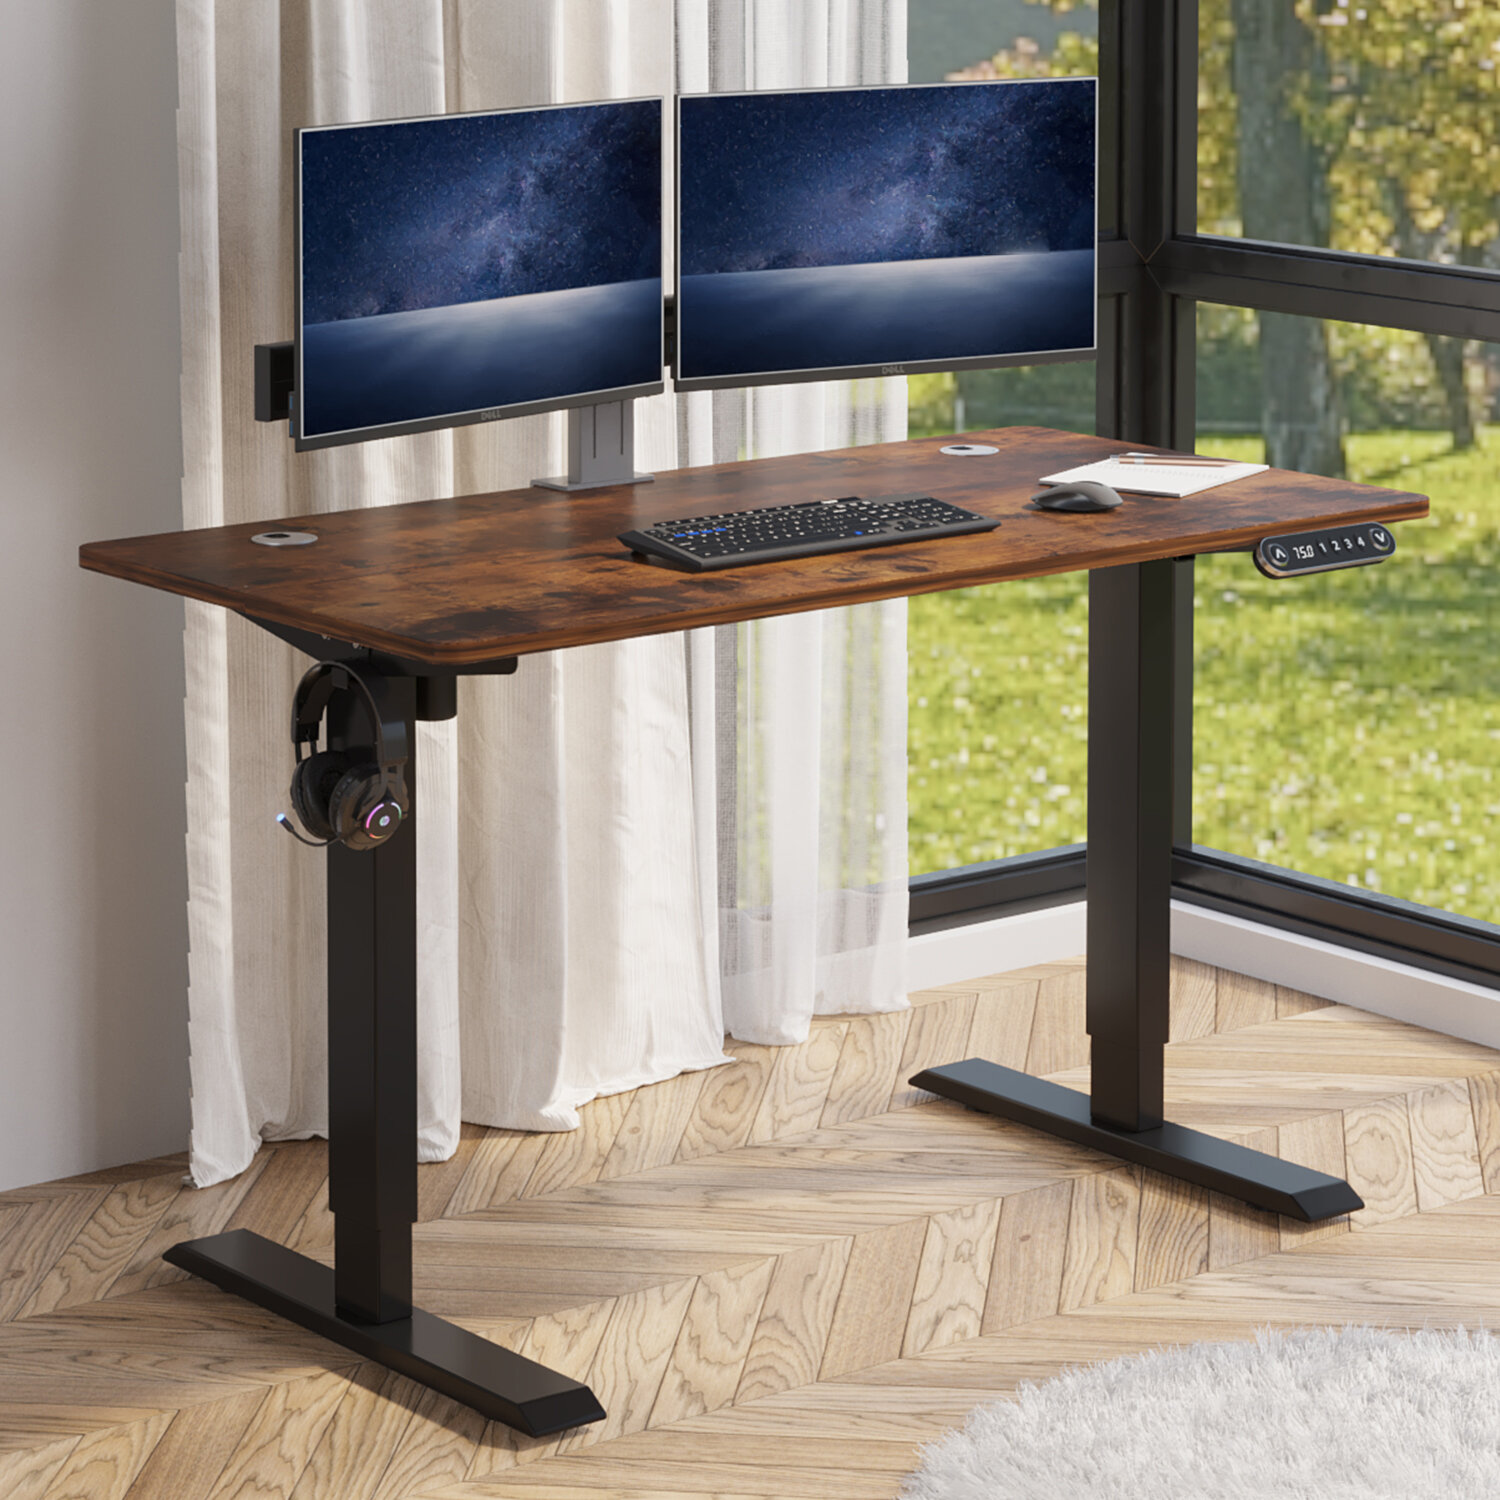 https://assets.wfcdn.com/im/25208230/compr-r85/1785/178508056/altamae-48-adjustable-height-standing-desk.jpg